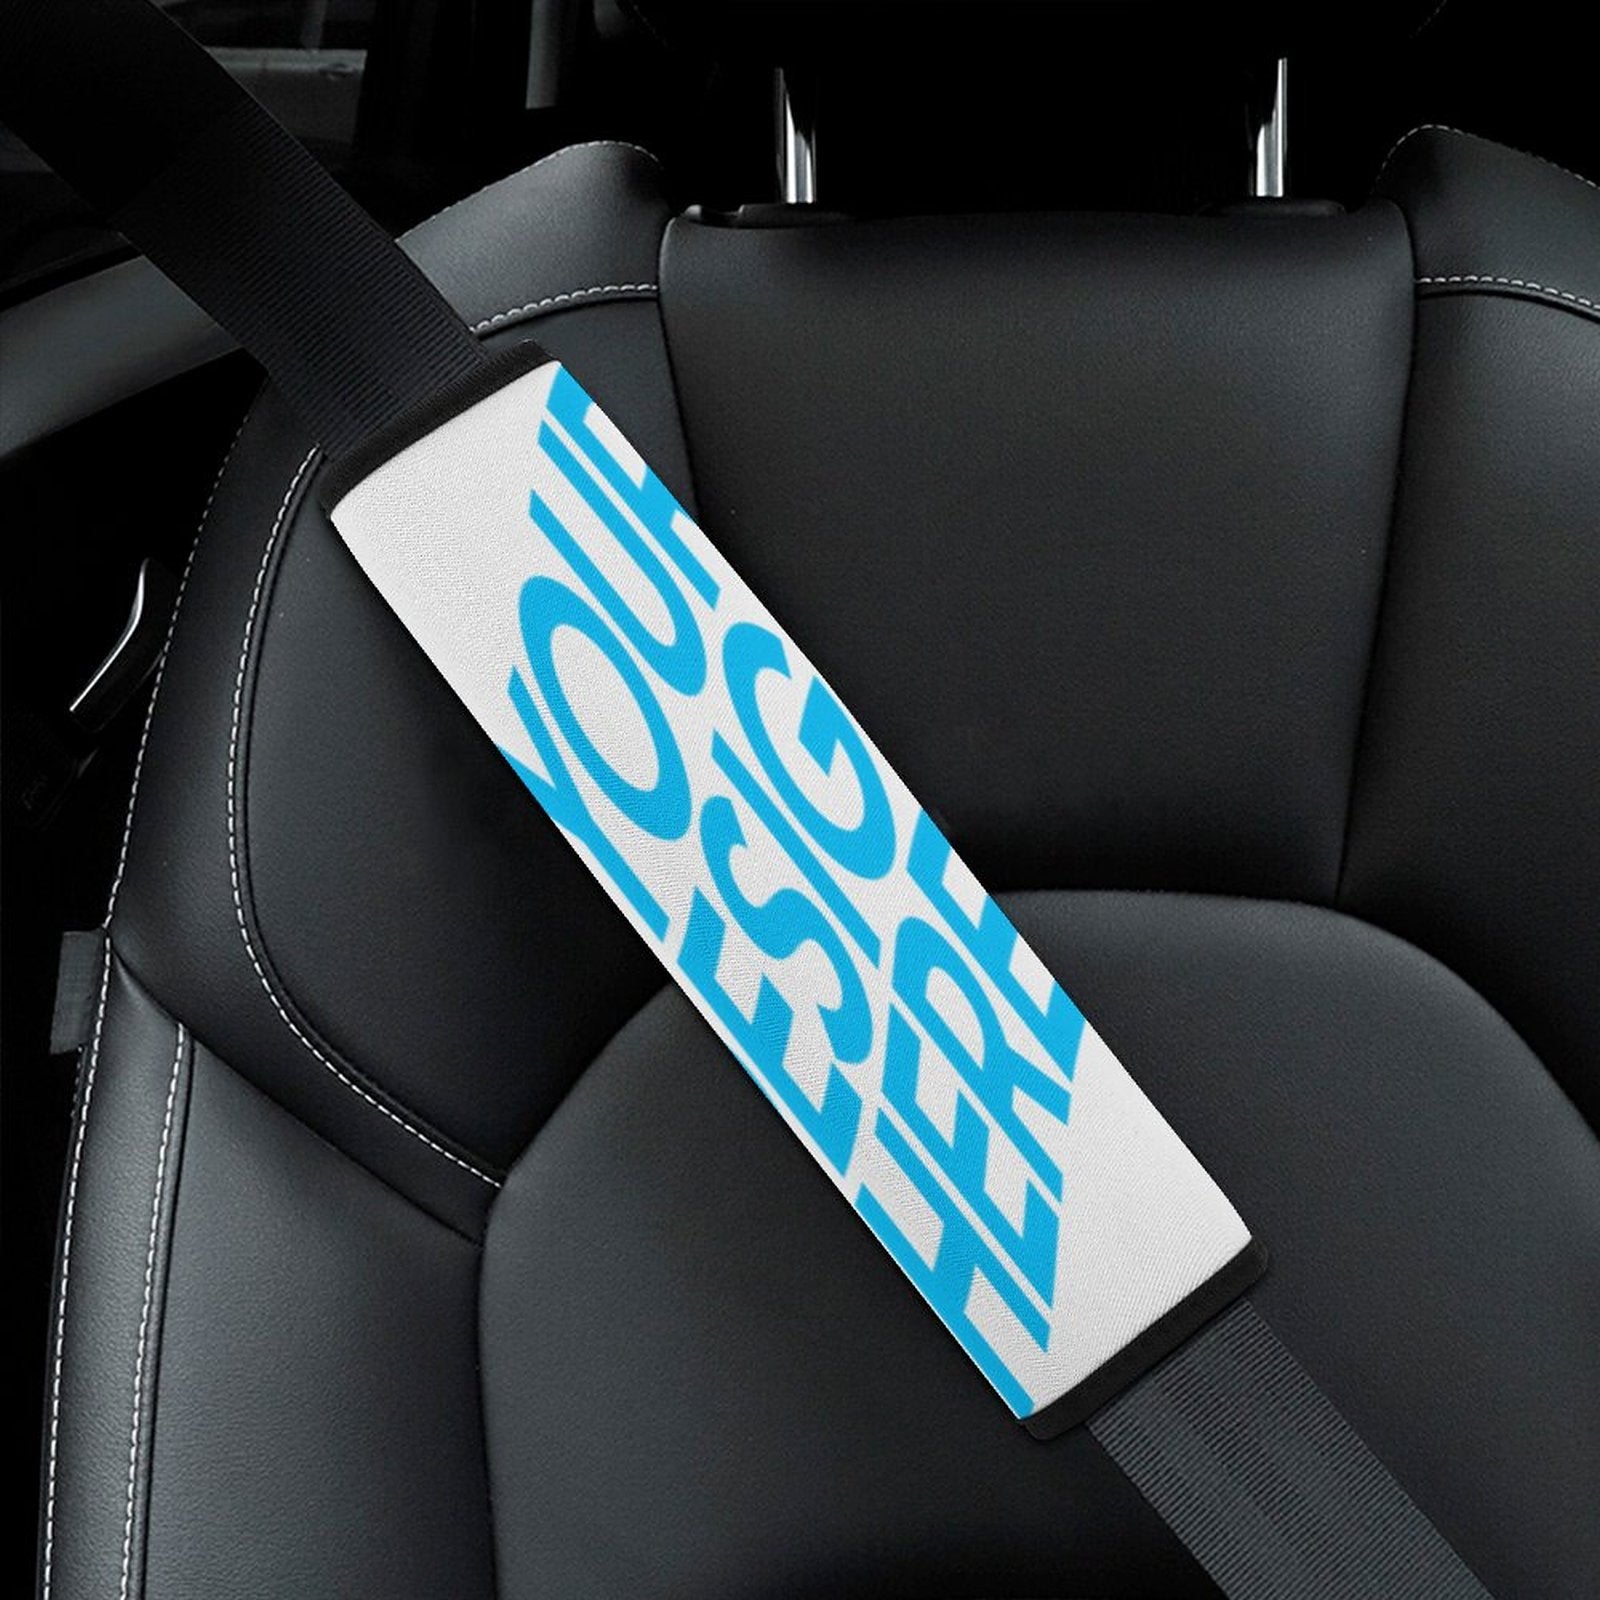 Gurtschoner Auto Erwachsene Blau 2 Stück Gurtpolster Auto Sicherheitsgurt  Polster Polsterung für Sitzgurt im Auto kinder Weich Autogurt Polster für